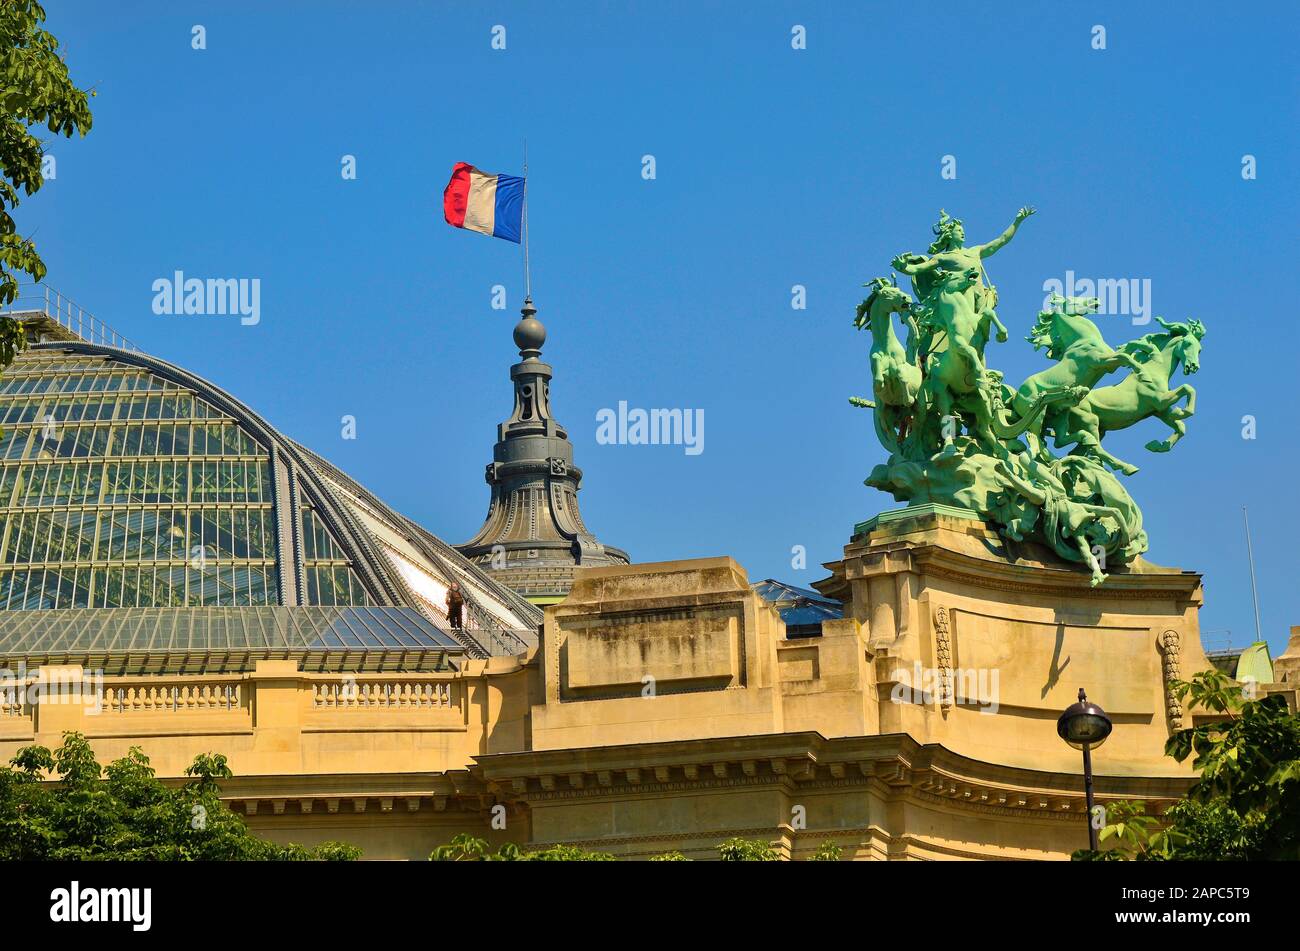 Cocarde tricolore, Parigi, Francia Foto stock - Alamy